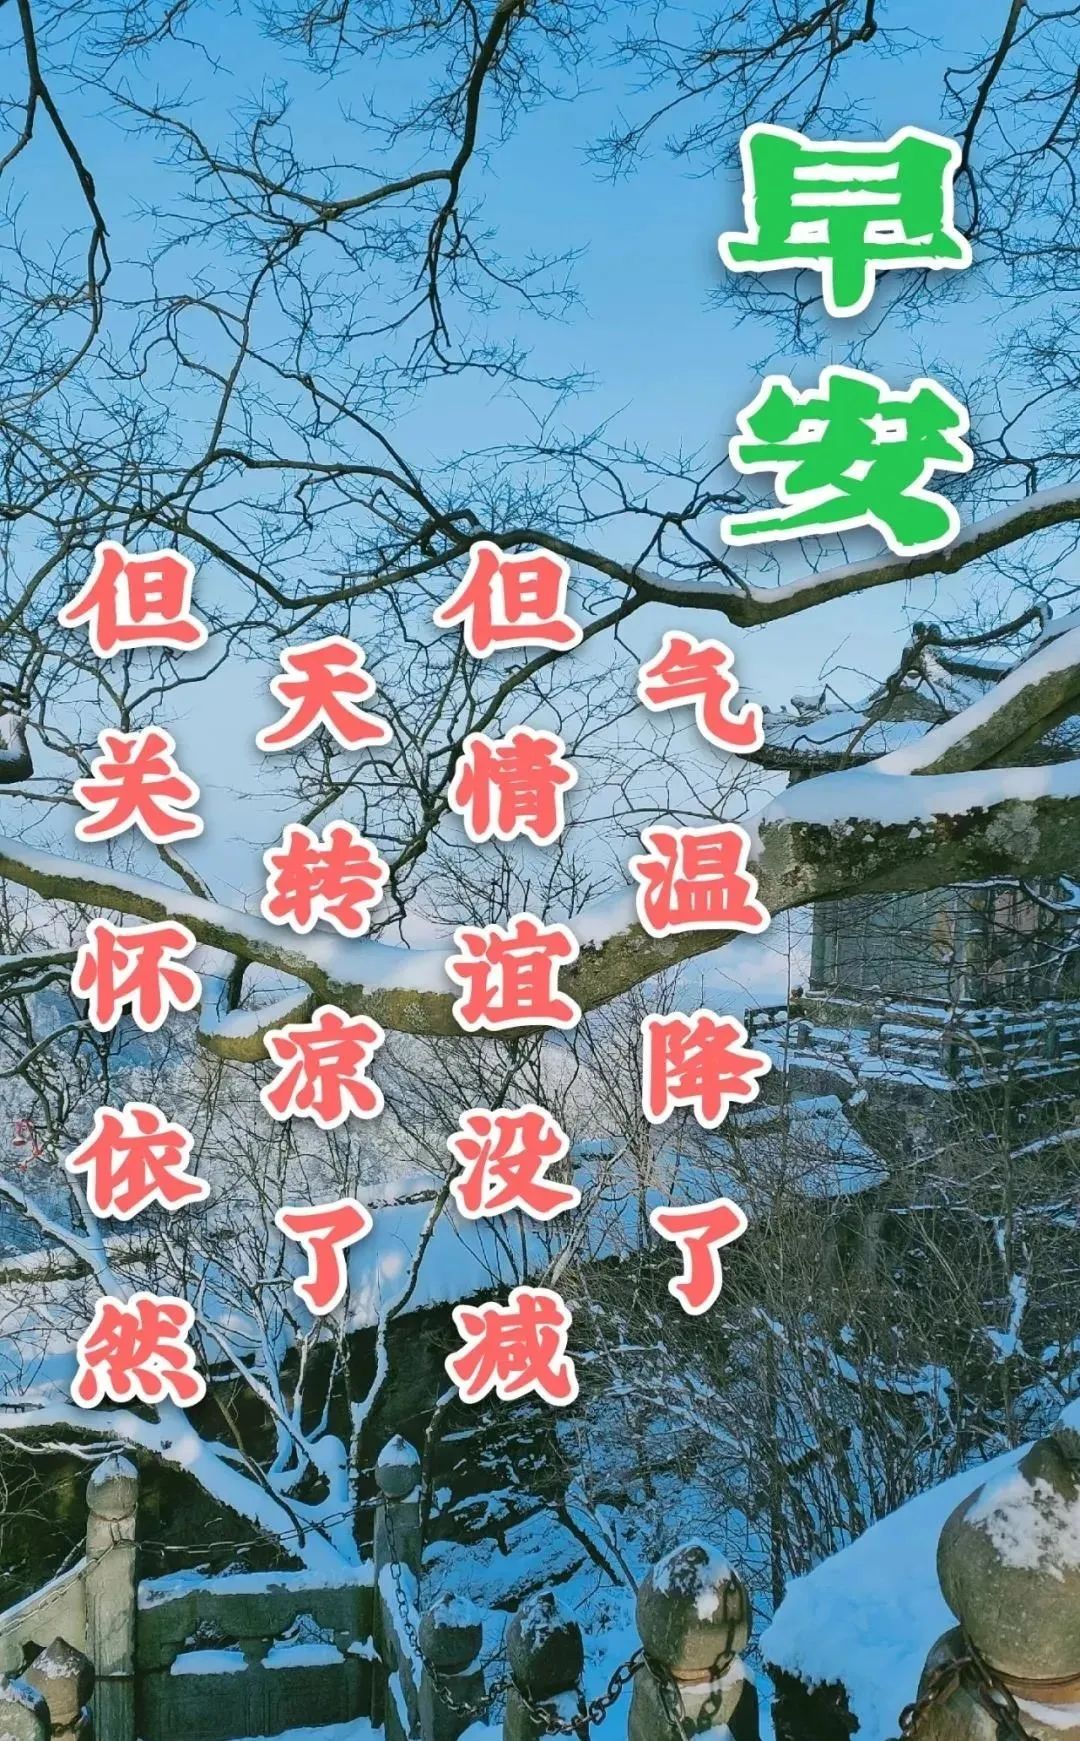 8张最新冬日风景雪景早上好祝福图片带字温馨